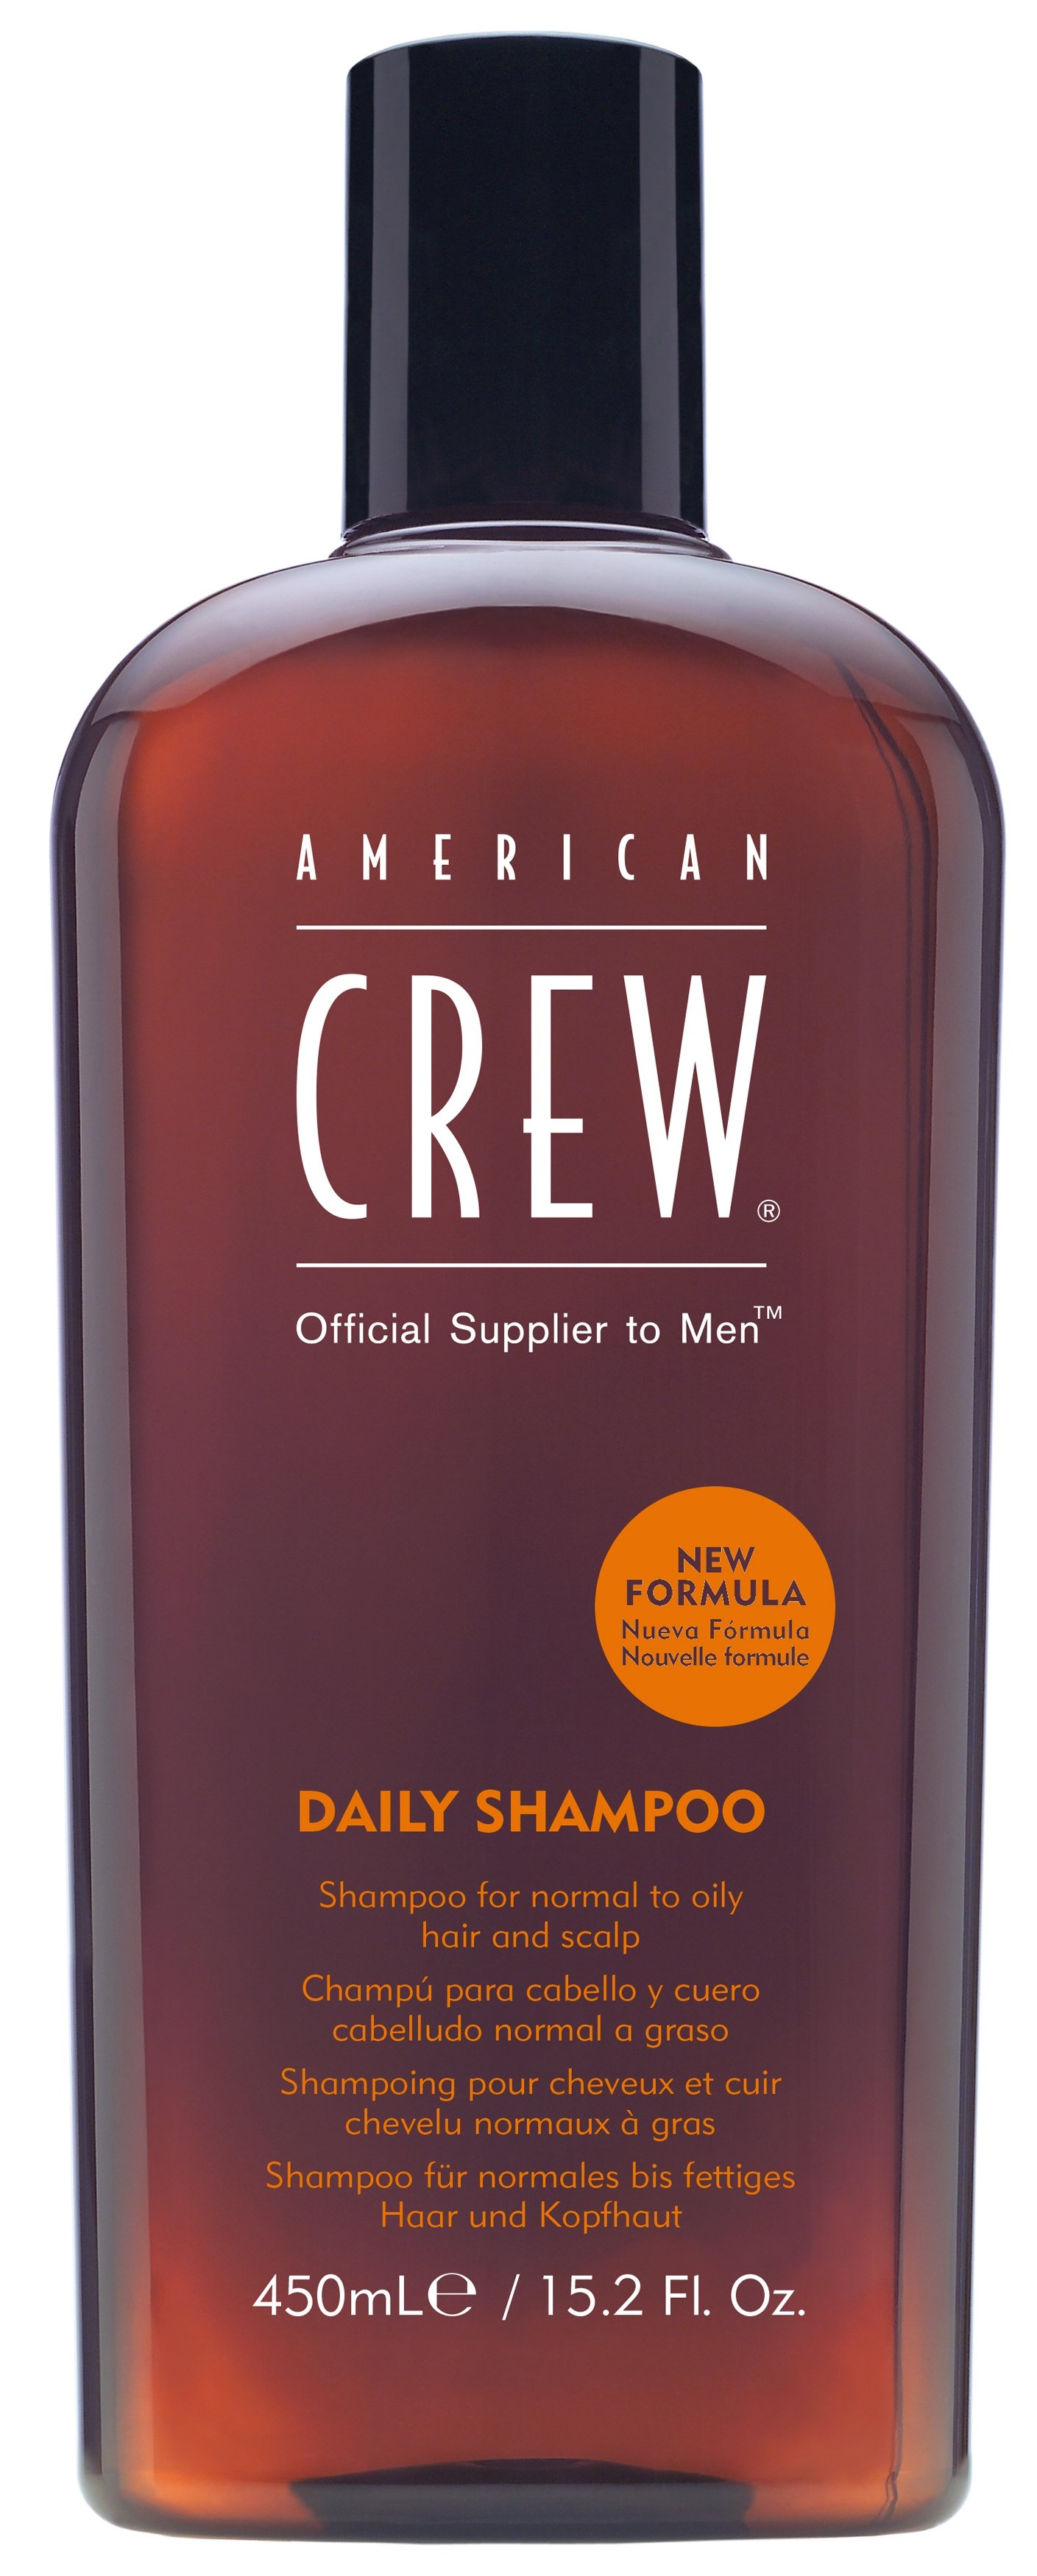 Мужские шампуни:  AMERICAN CREW -  Шампунь для нормальных и склонных к жирности волос и кожи головы American Crew Daily Shampoo (450 мл) (450 мл)